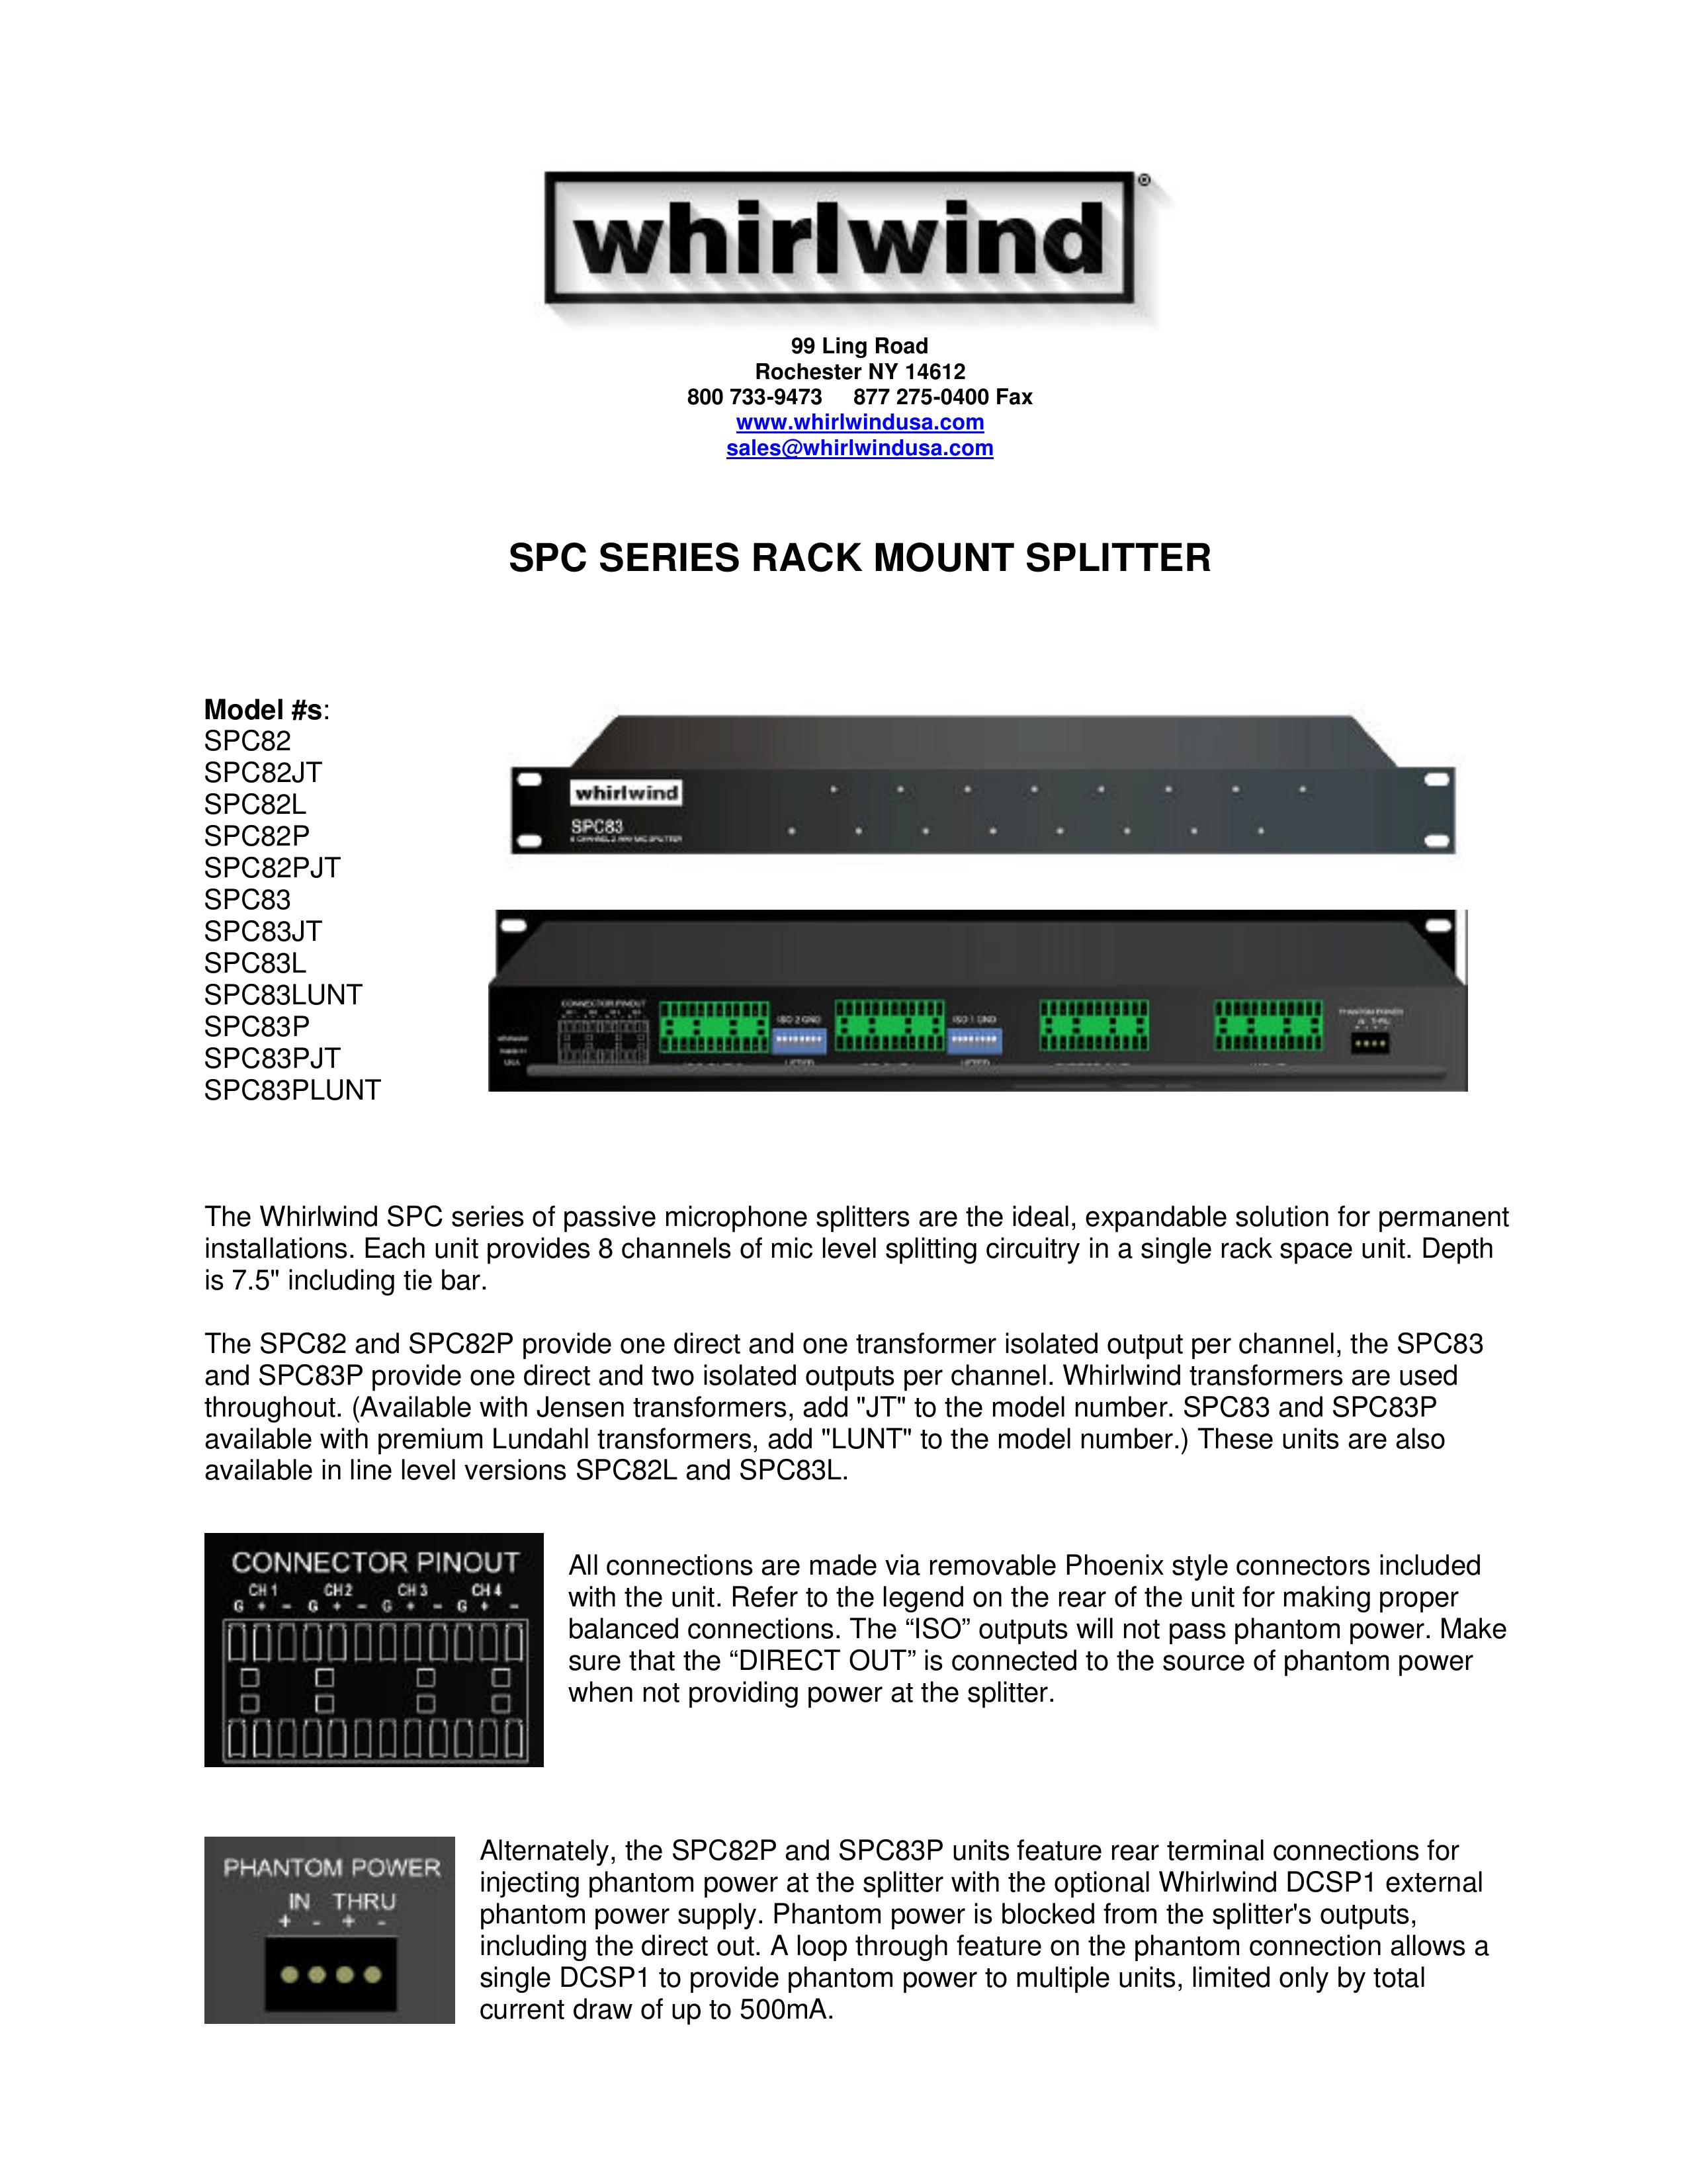 Whirlwind SPC82P Microphone User Manual